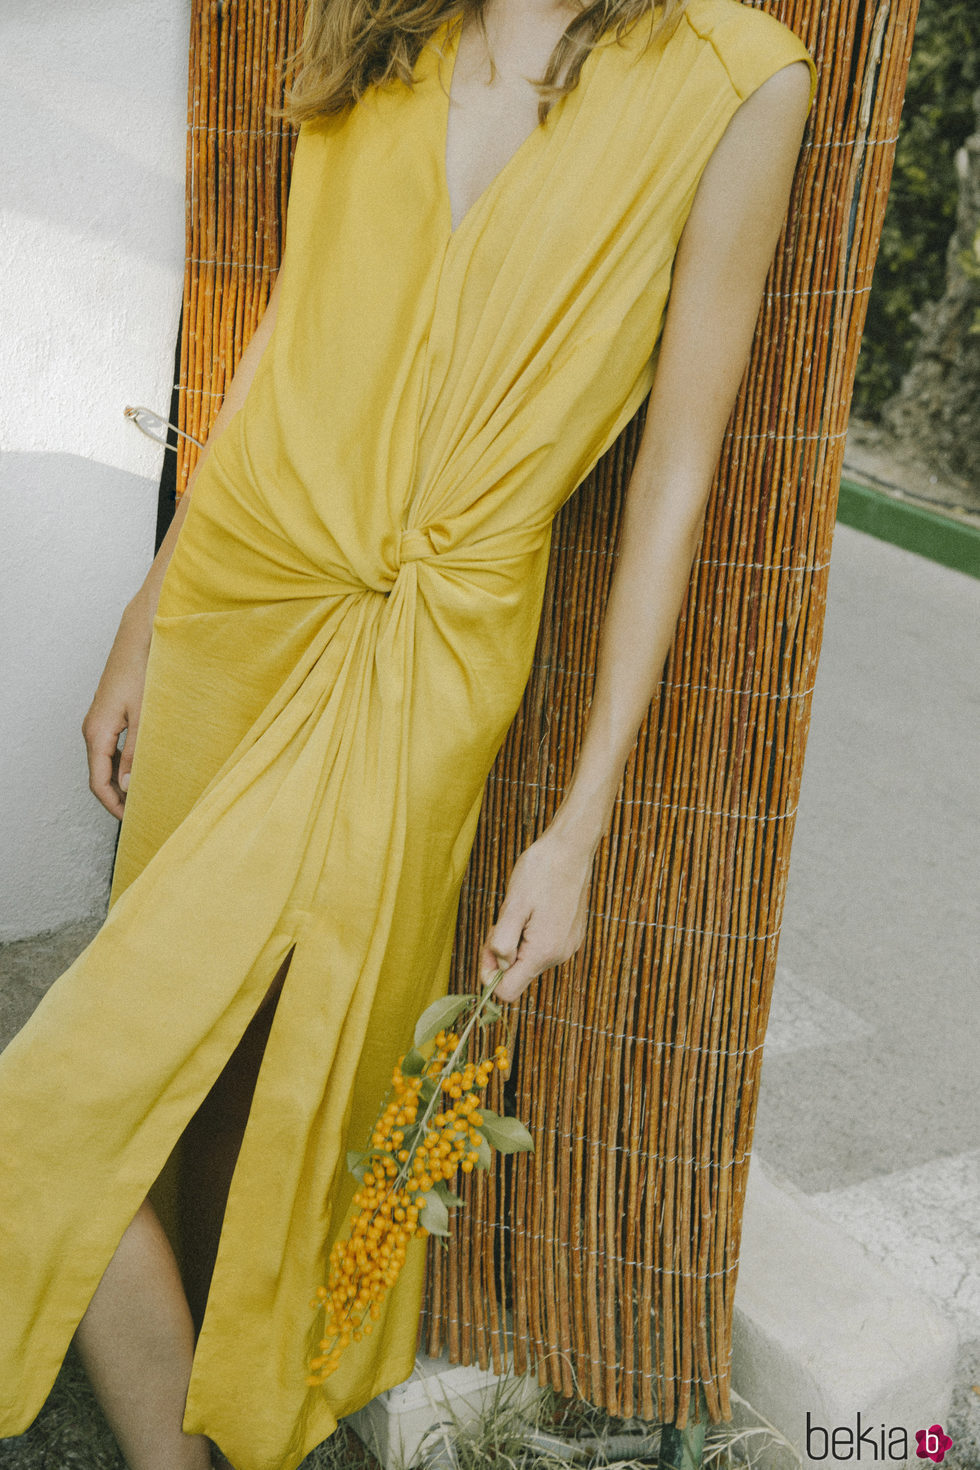 Vestido amarillo colección de Intropia de su temporada primavera/verano 2018